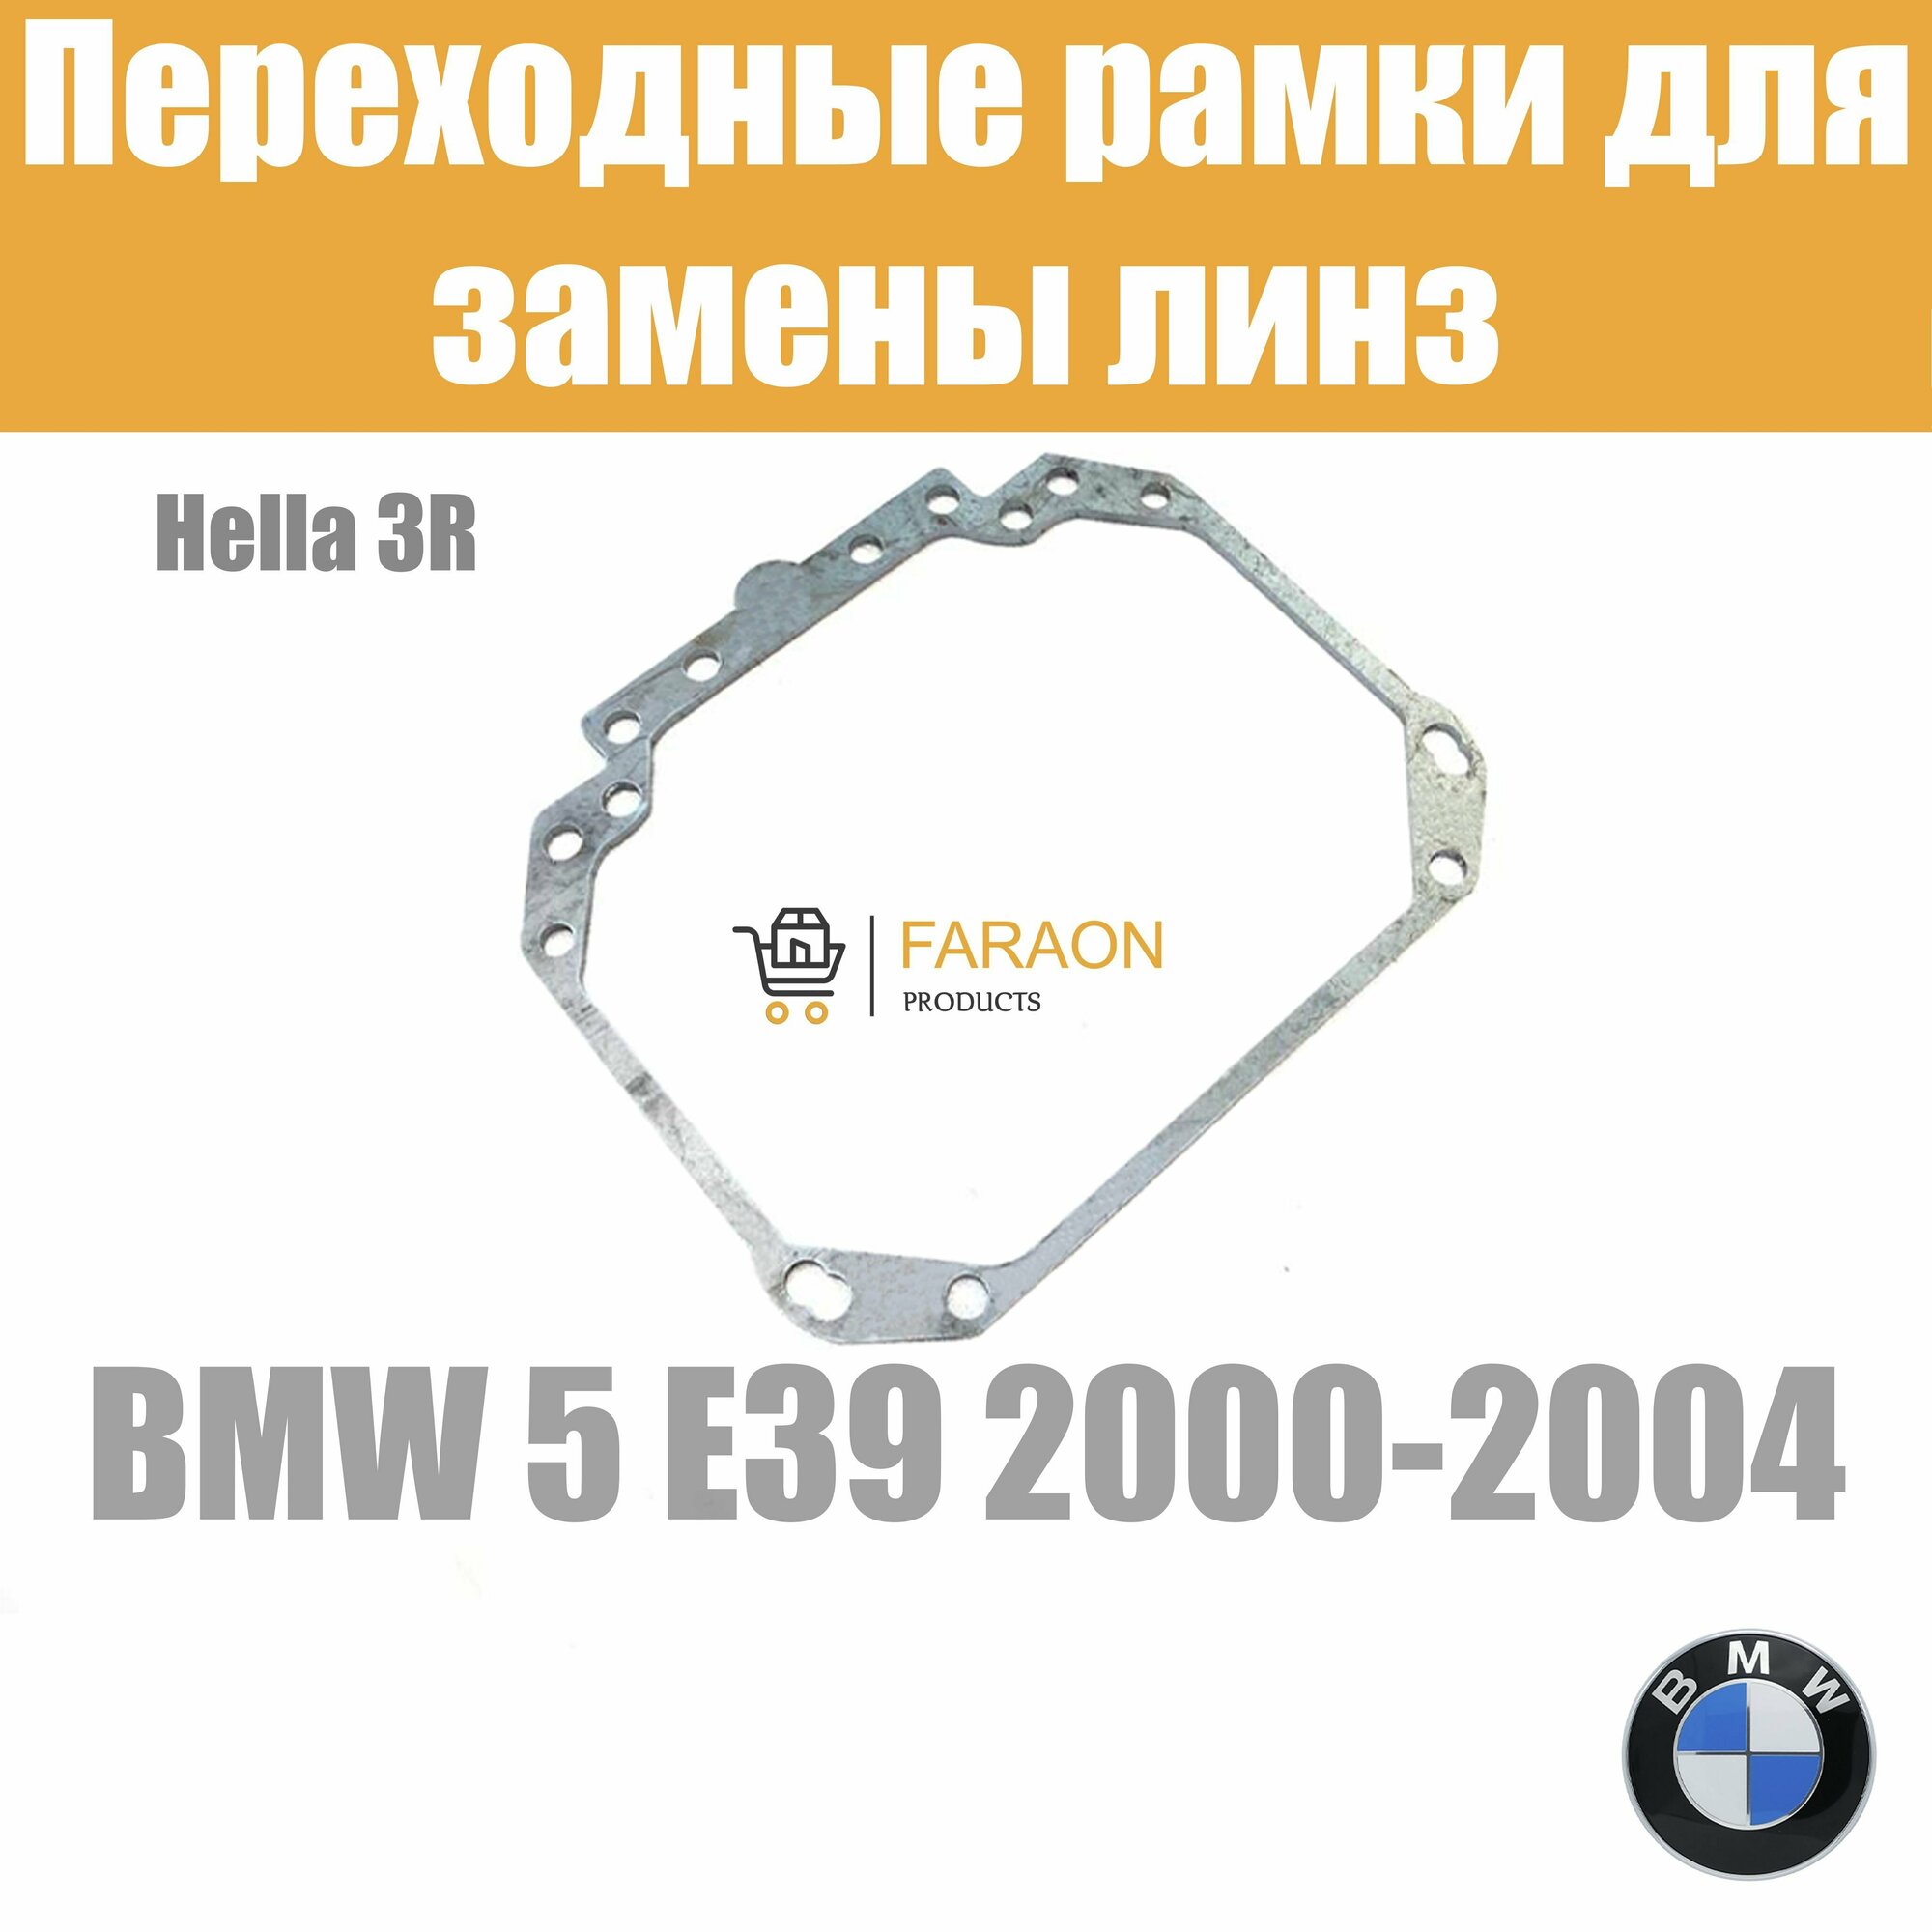 Переходные рамки для замены линз на BMW 5 E39 2000-2004 Крепление Hella 3R